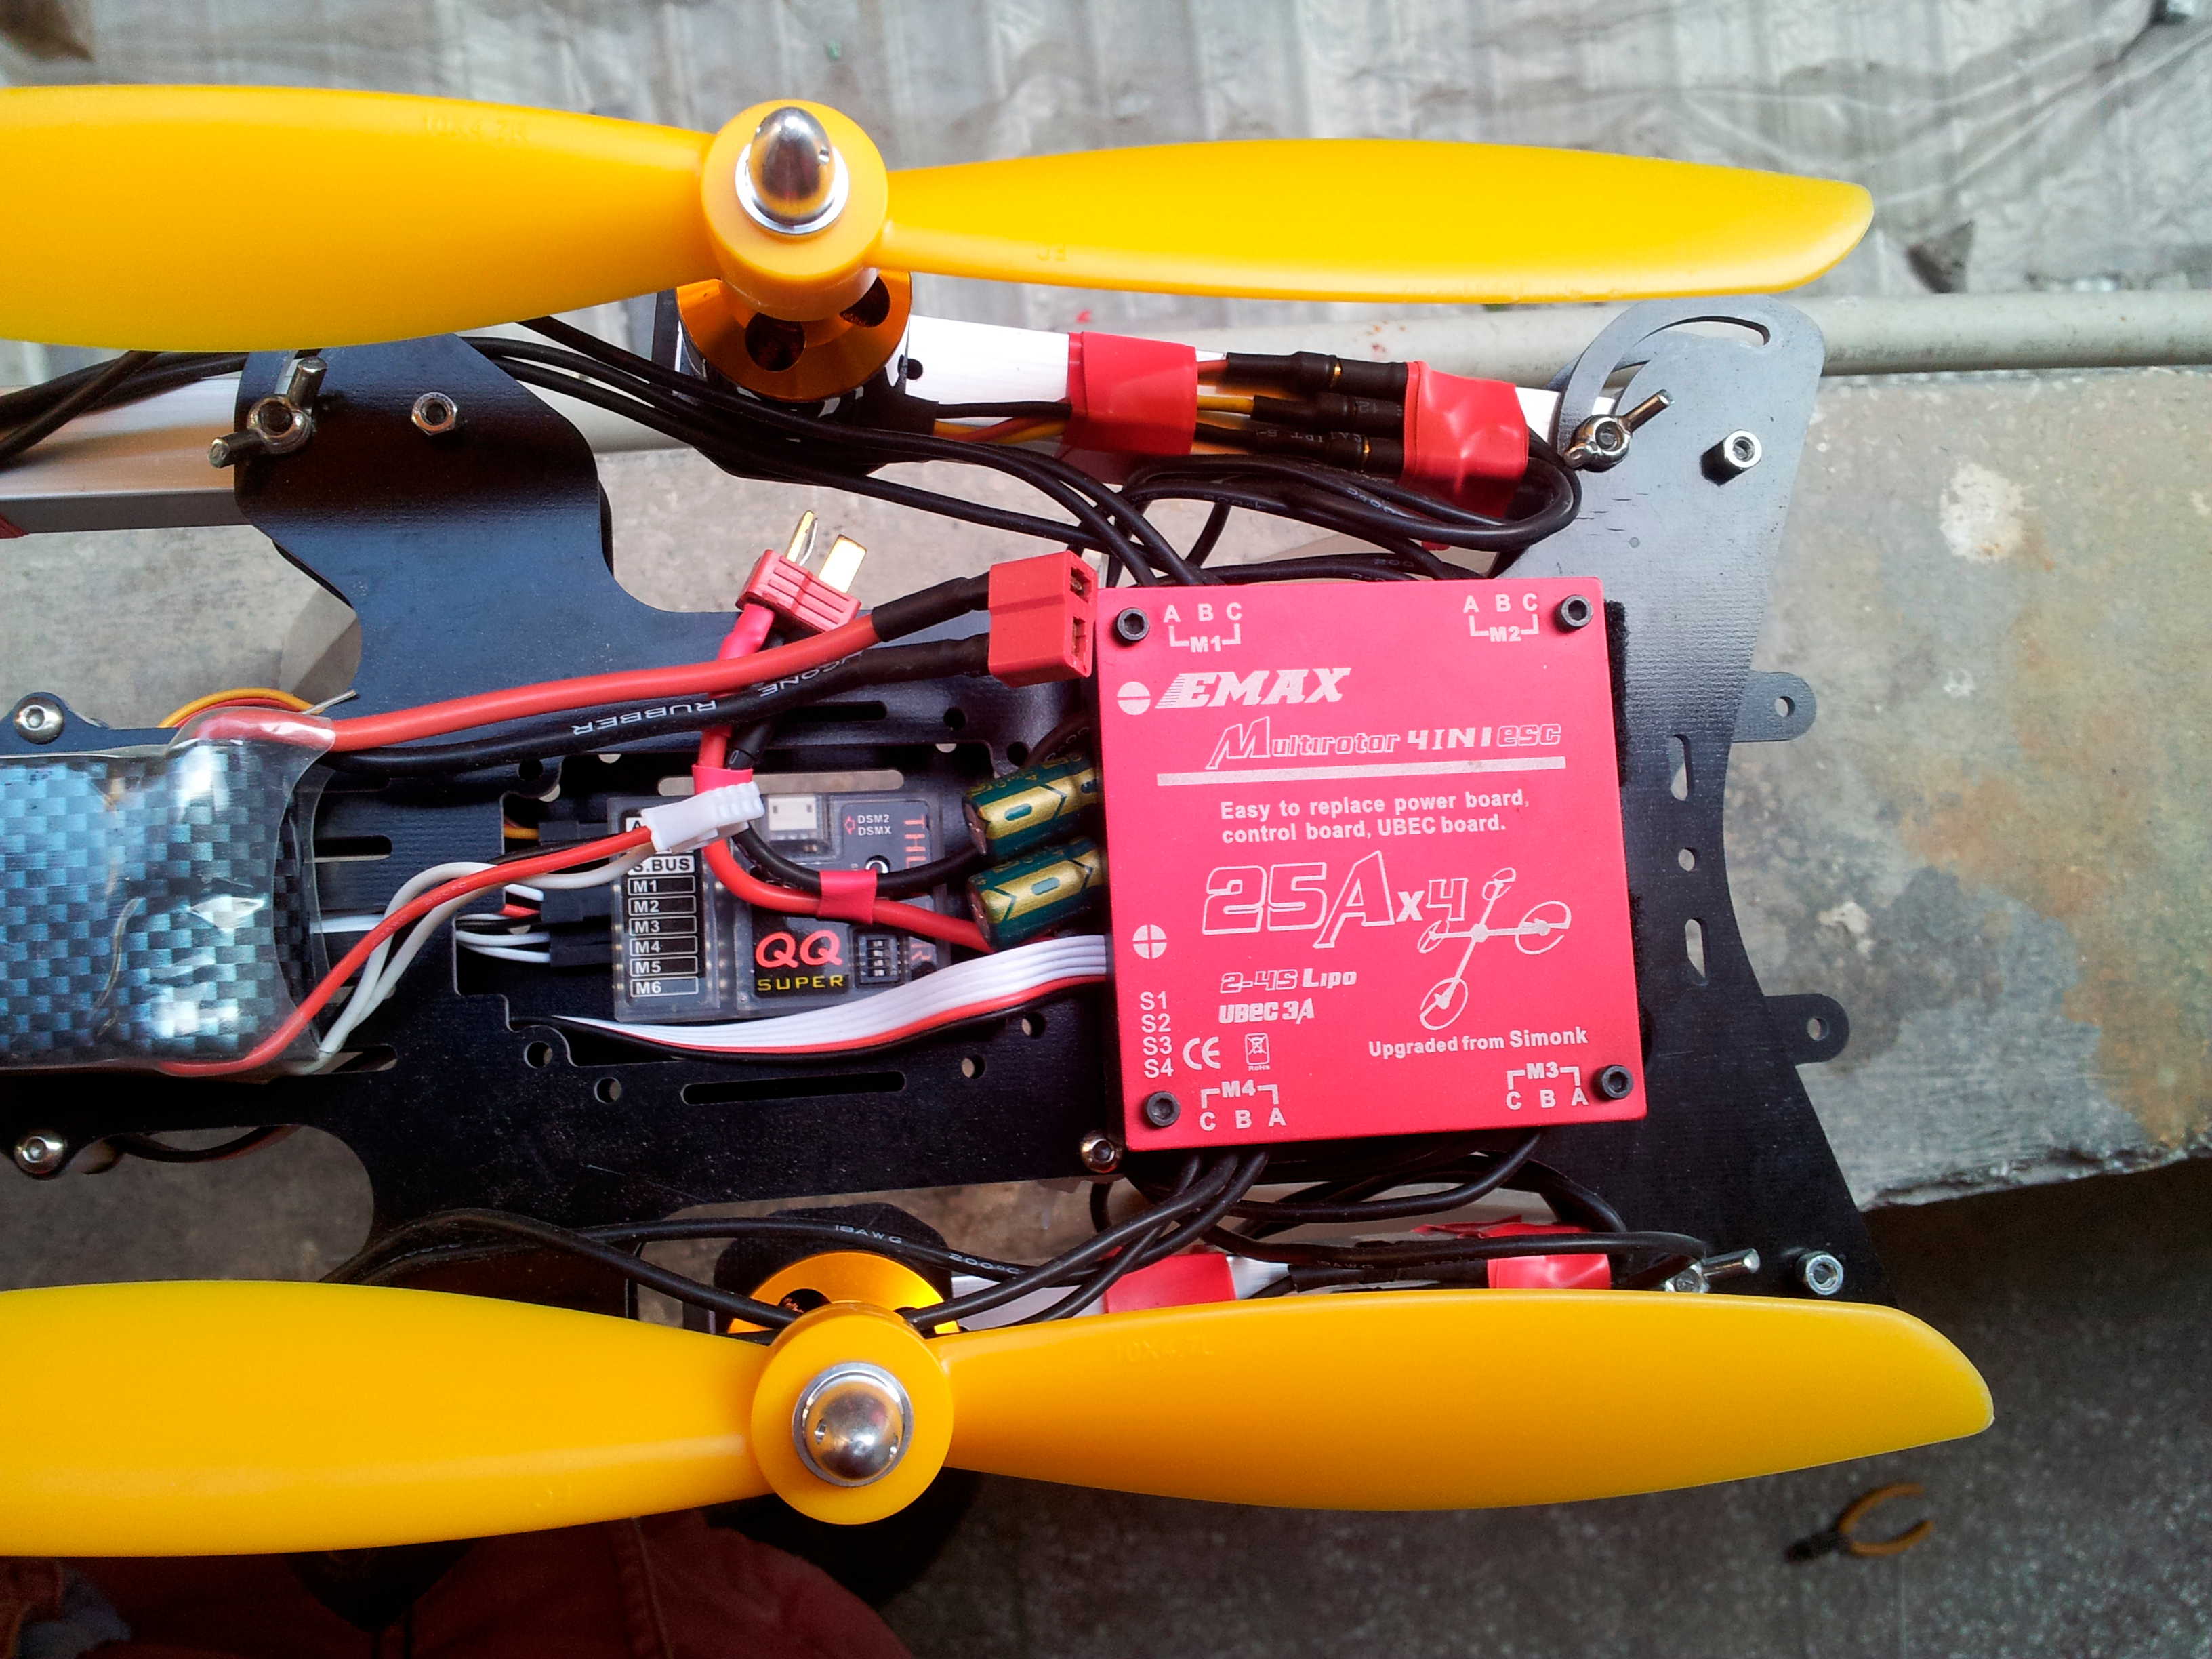 初试QQ飞控 电池,飞控,电调,电机,遥控器 作者:汶川热带鱼 4558 